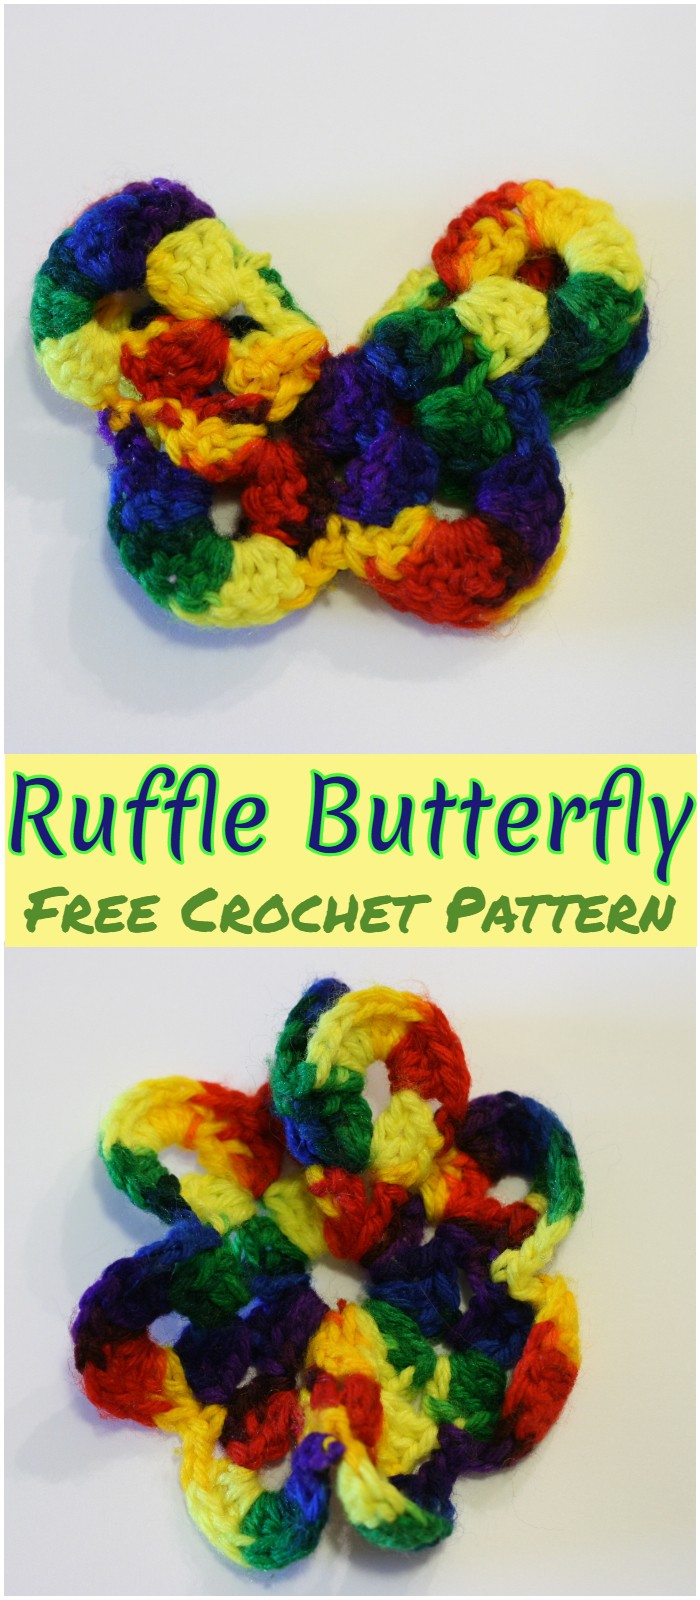 Crochet Ruffle Butterfly